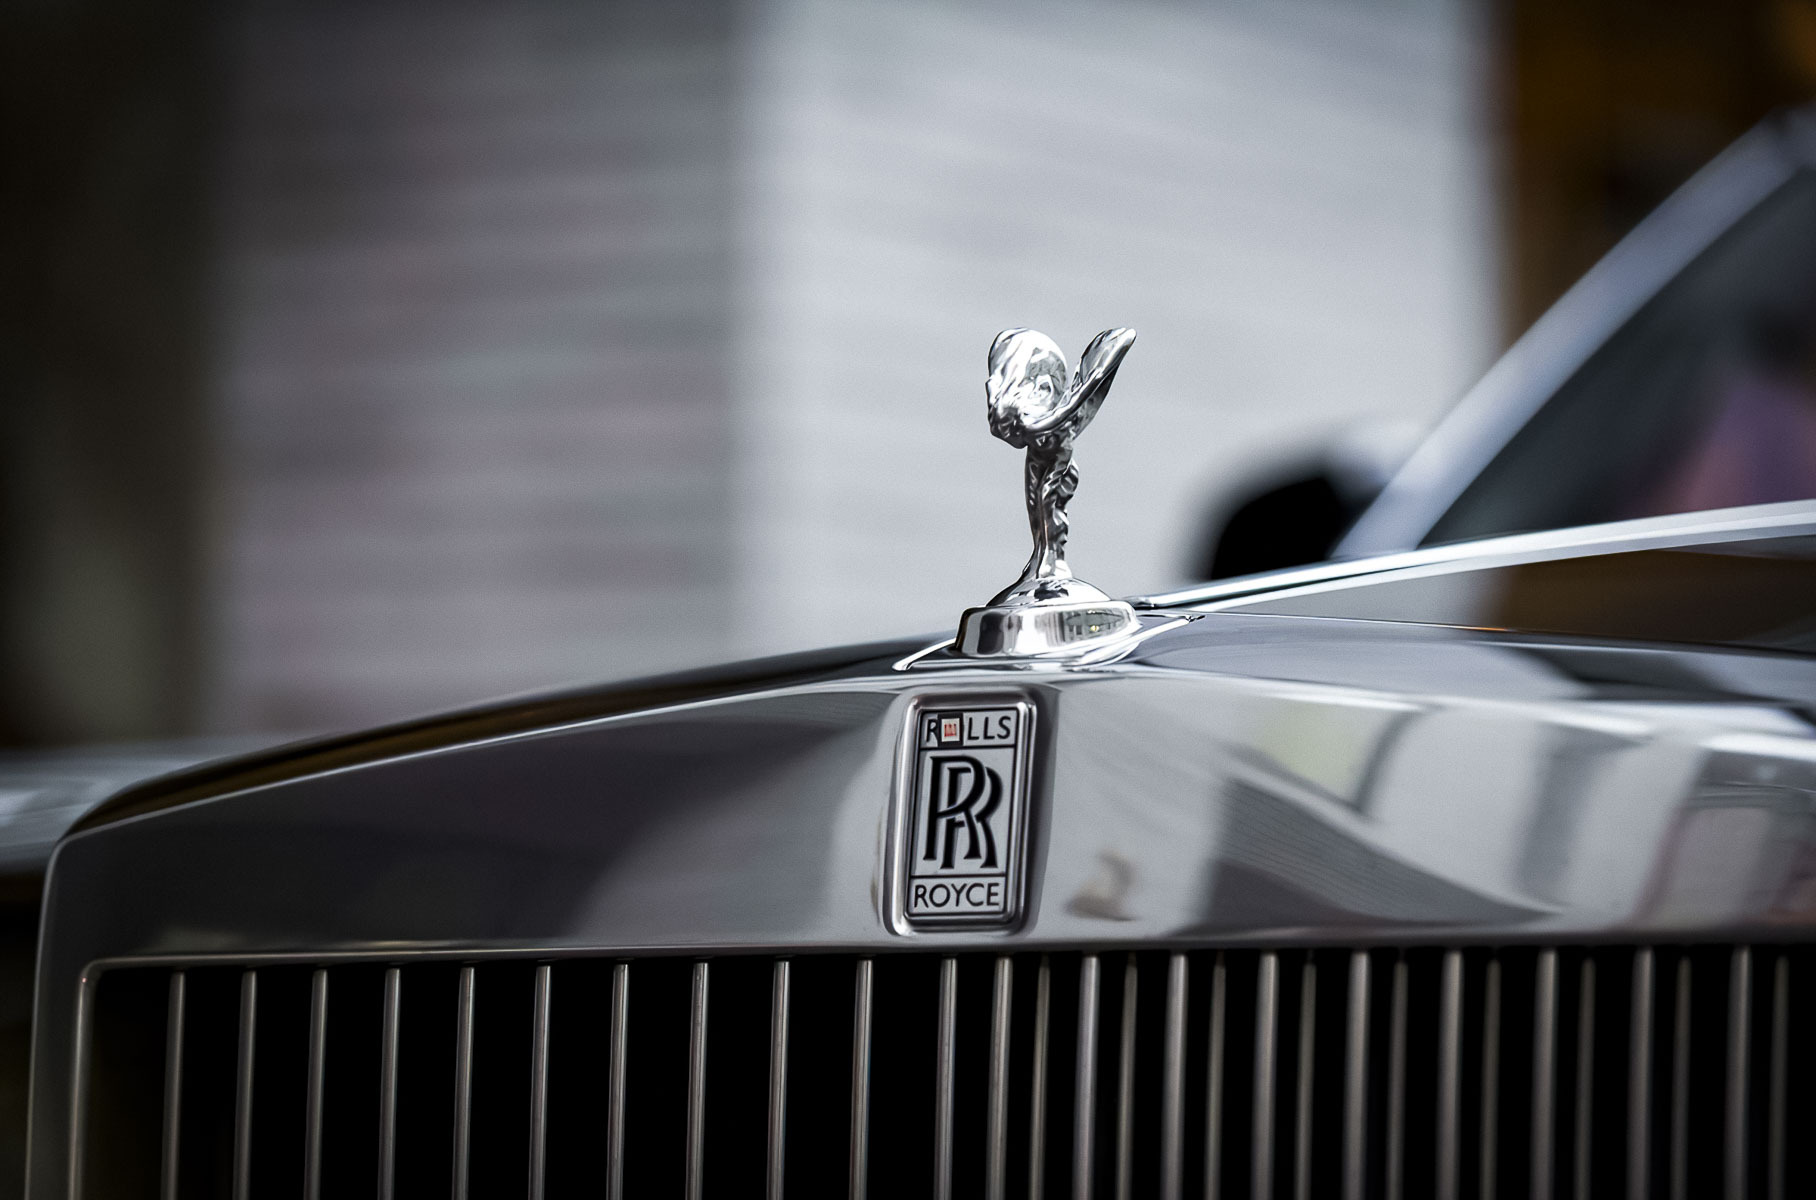 Необычную версию Rolls-Royce Phantom продают в Москве за 19 миллионов рублей